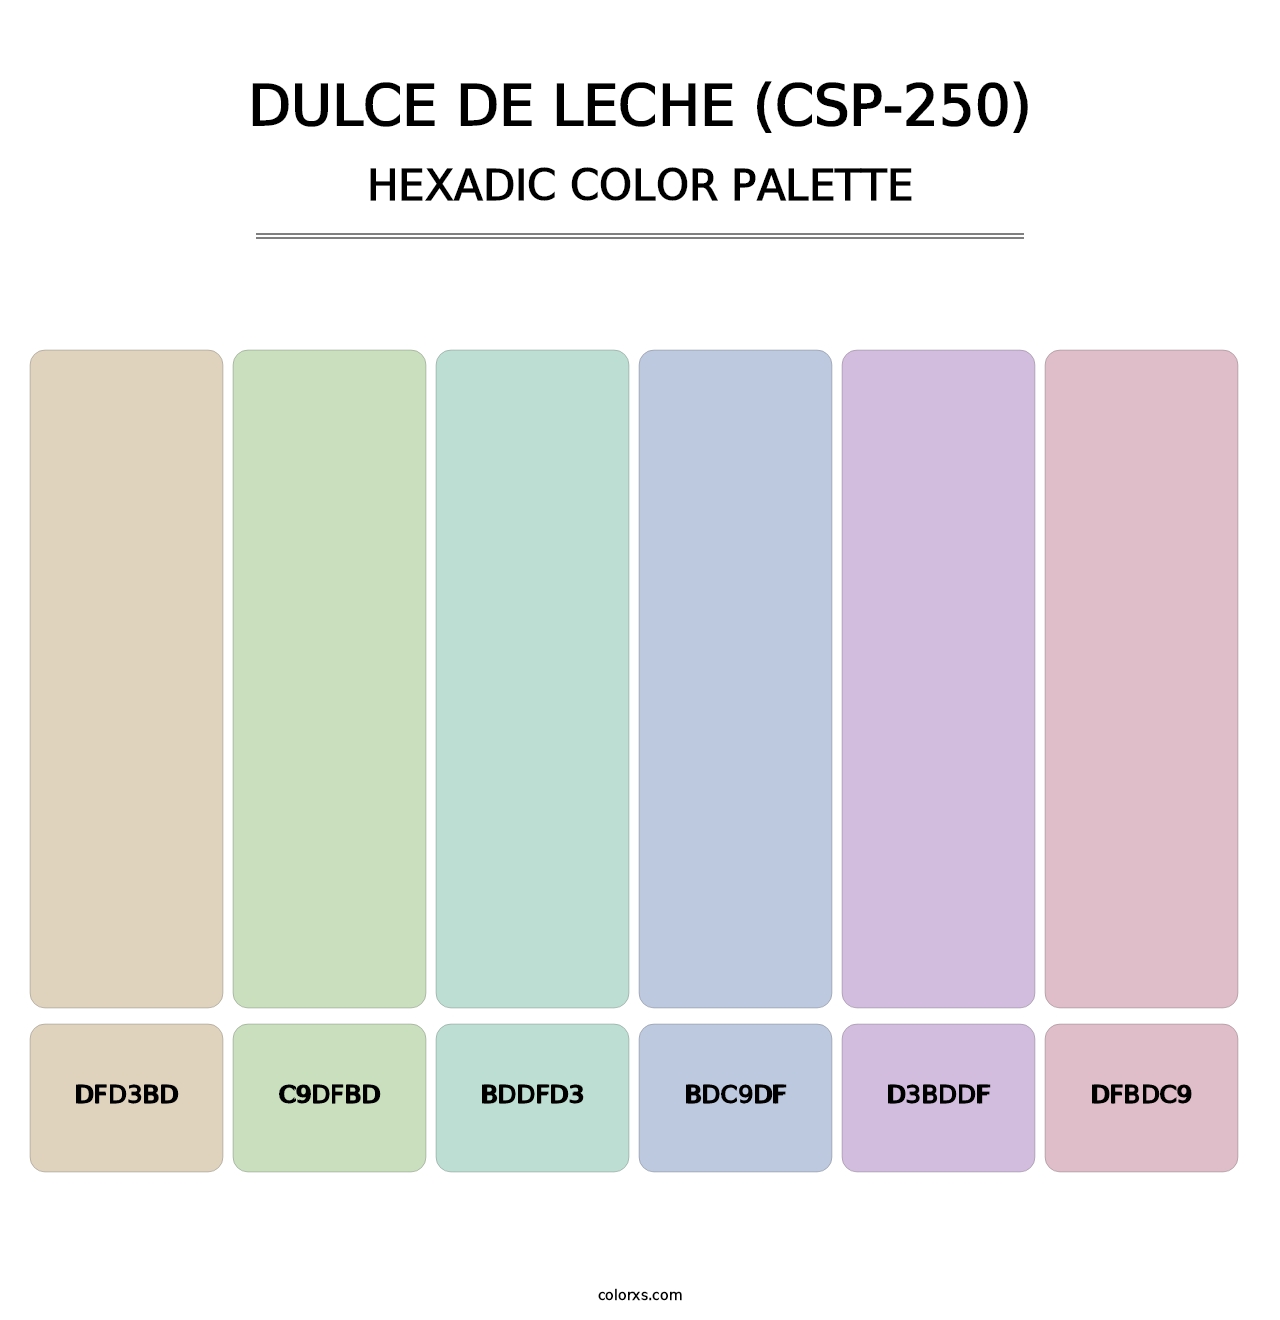 Dulce de Leche (CSP-250) - Hexadic Color Palette